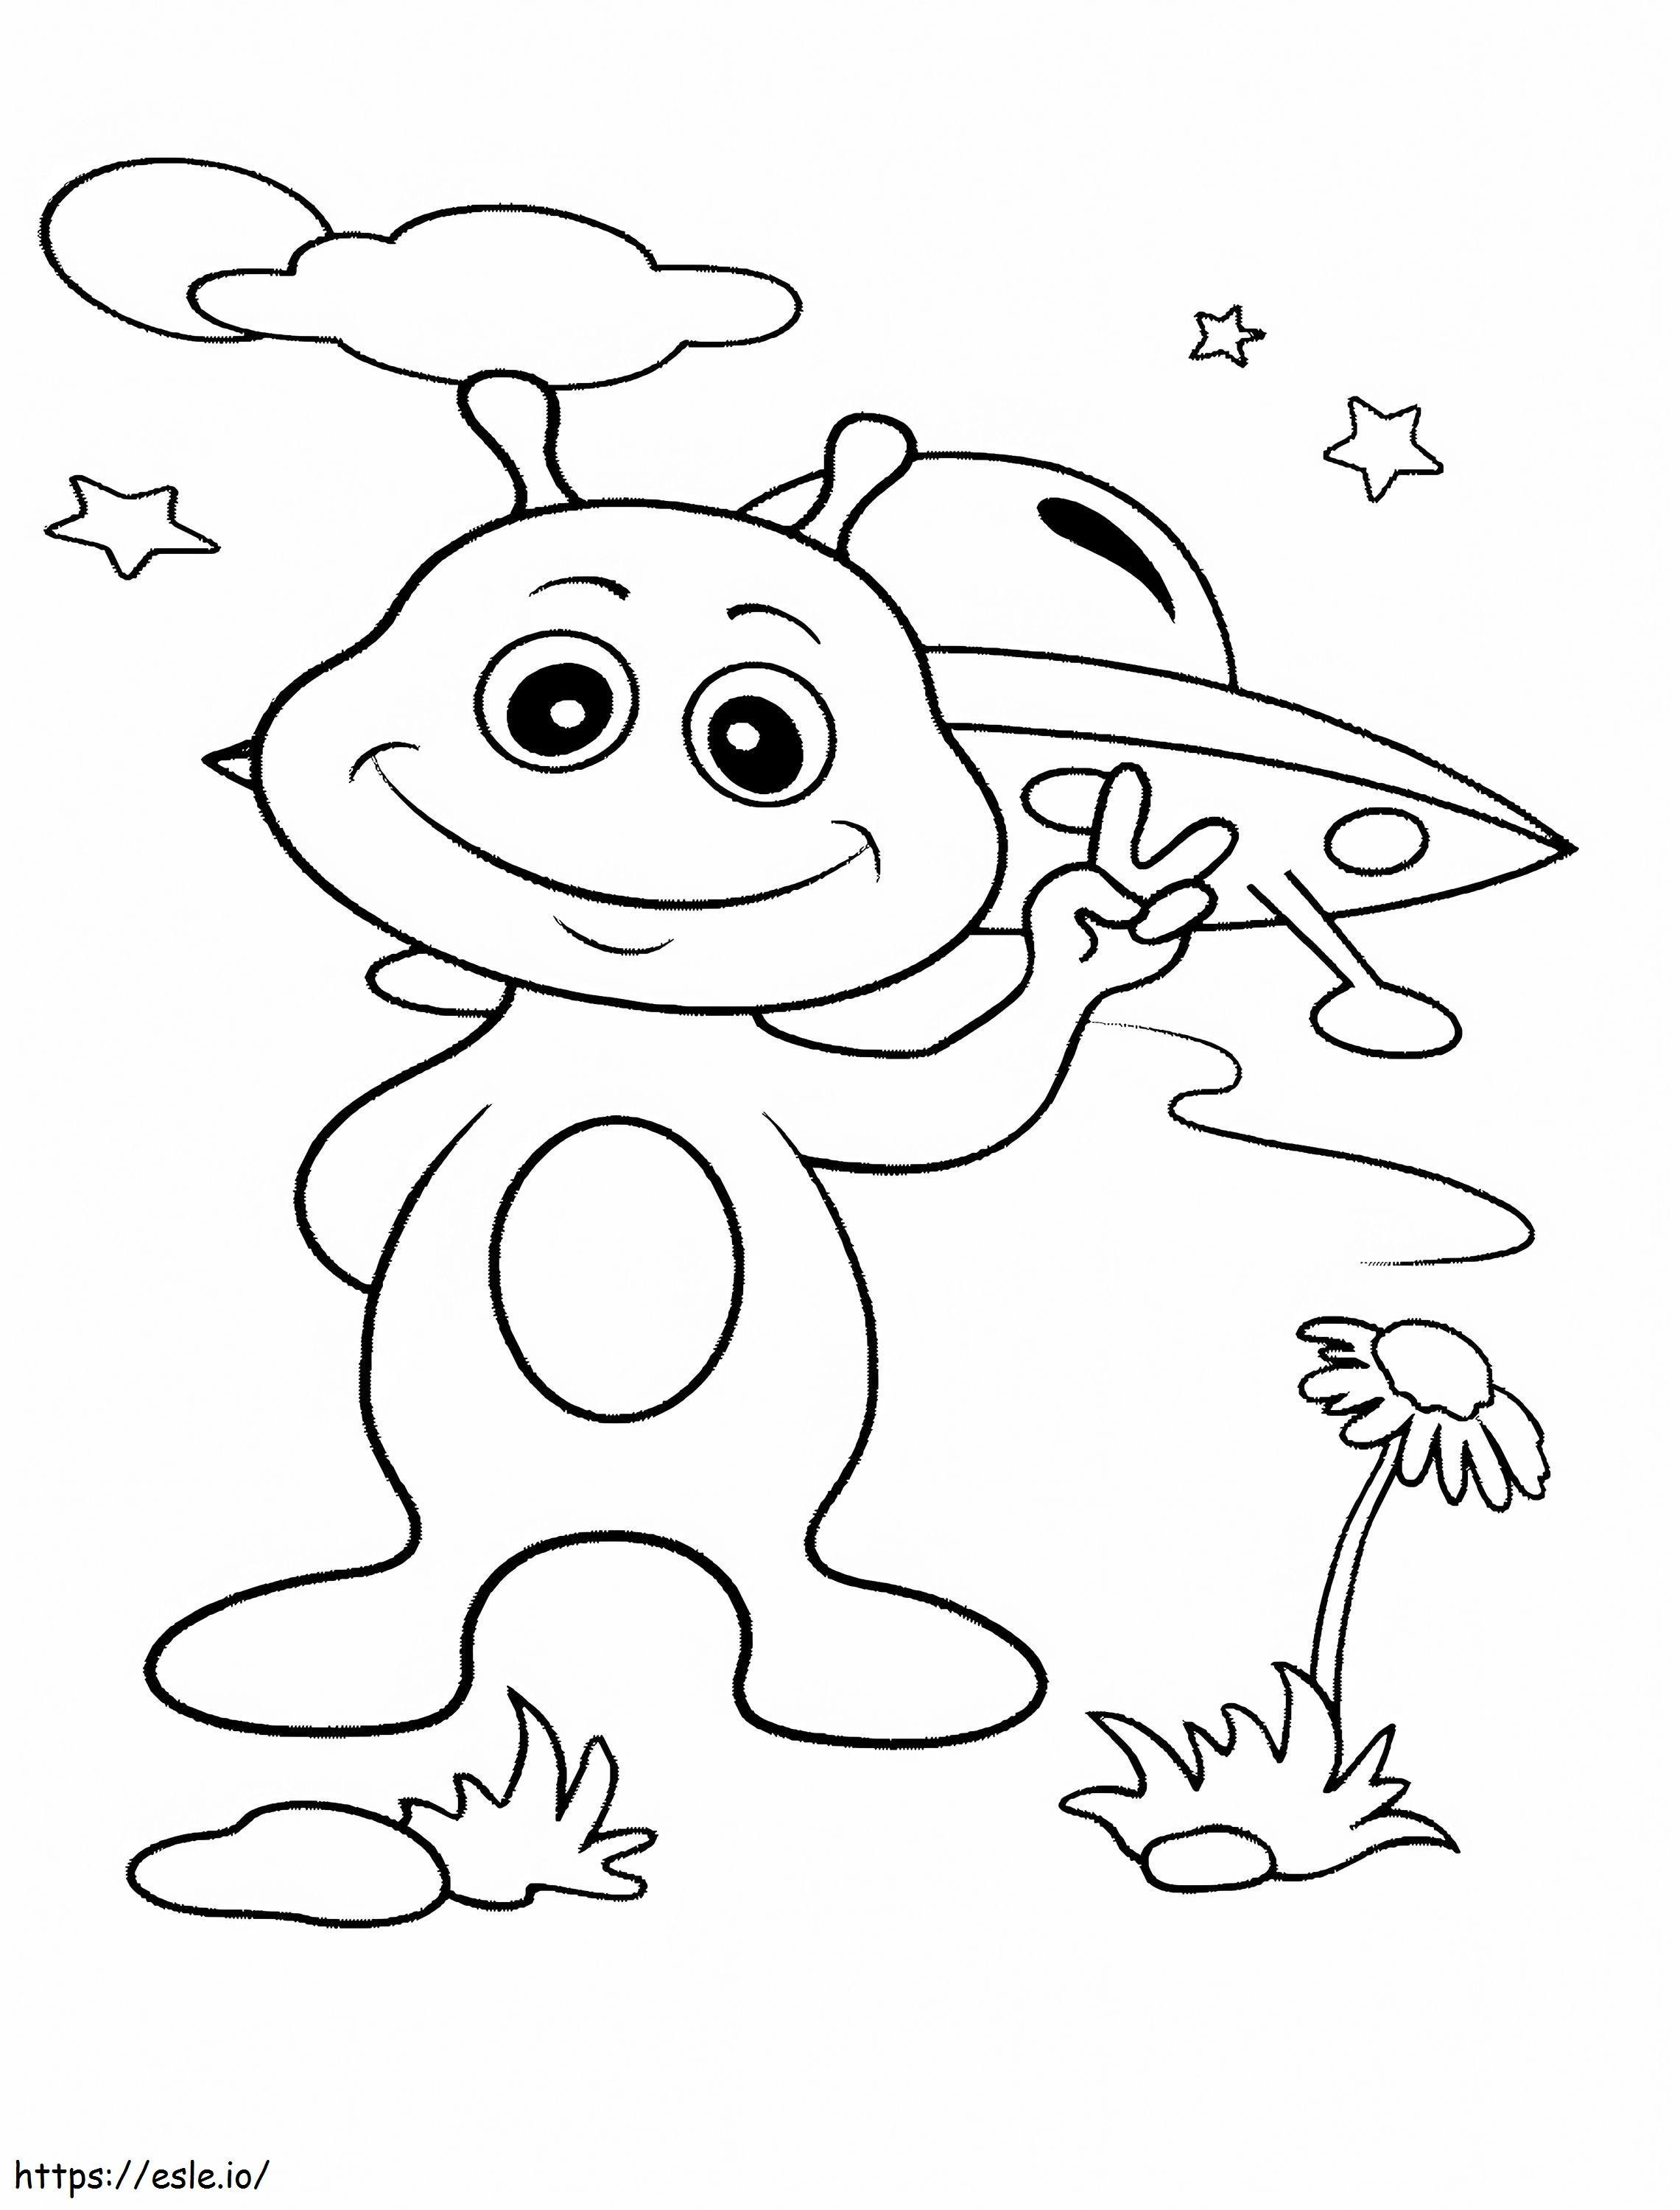 Happy Alien coloring page